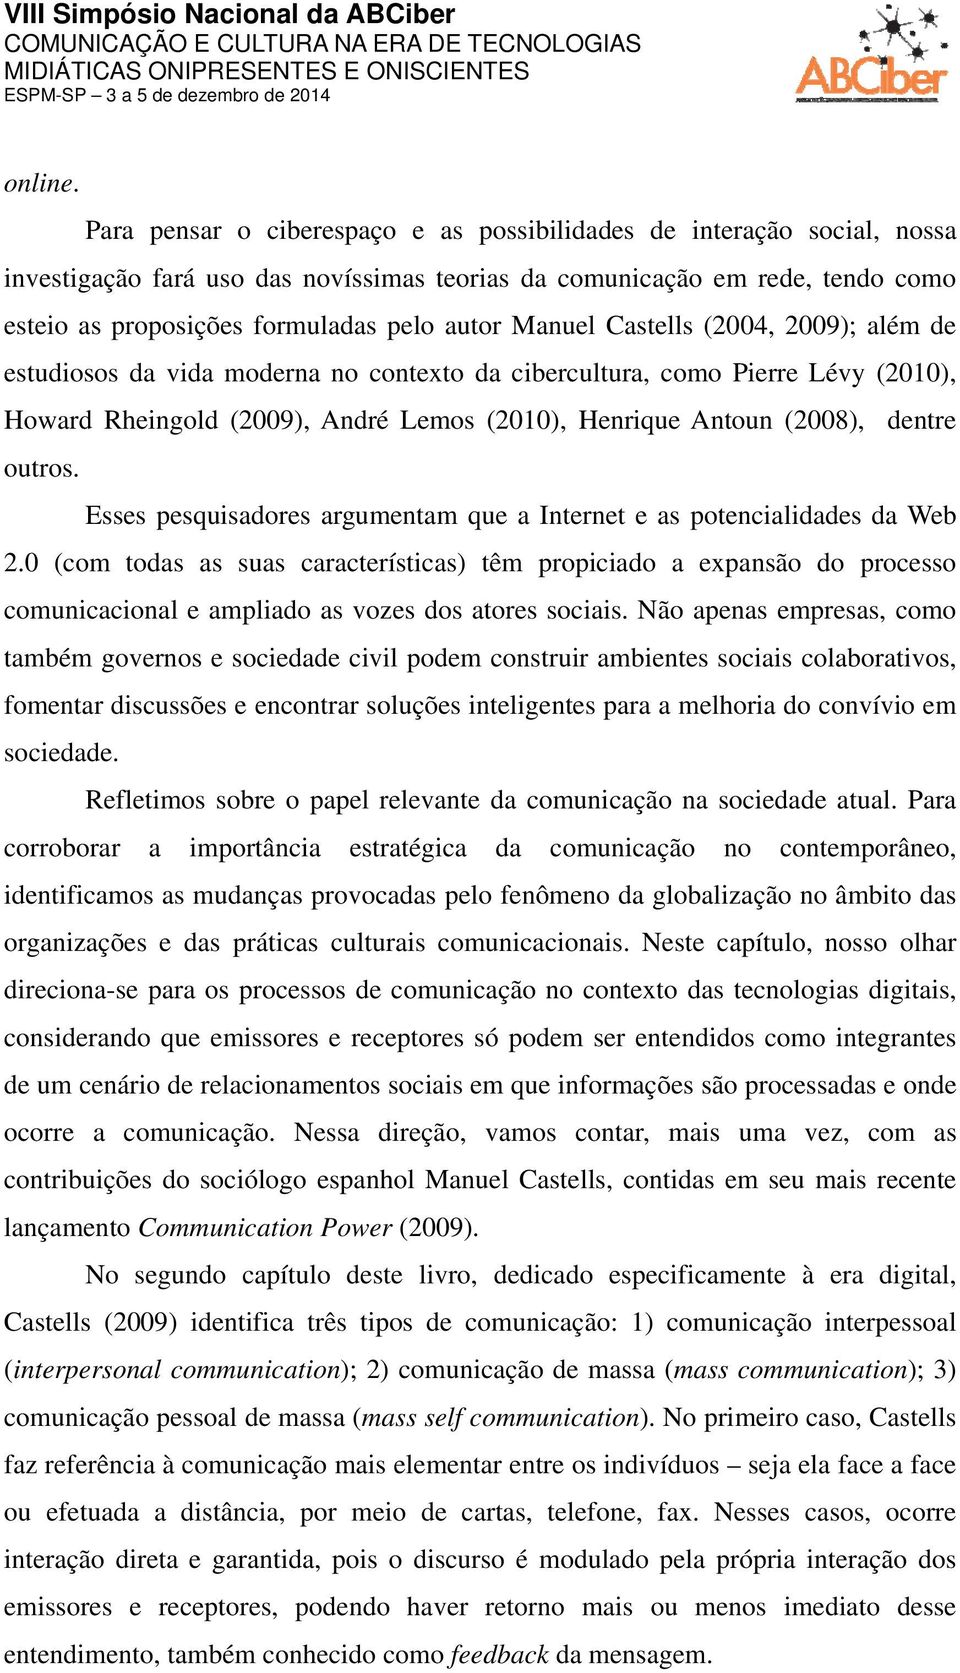 Manuel Castells (2004, 2009); além de estudiosos da vida moderna no contexto da cibercultura, como Pierre Lévy (2010), Howard Rheingold (2009), André Lemos (2010), Henrique Antoun (2008), dentre